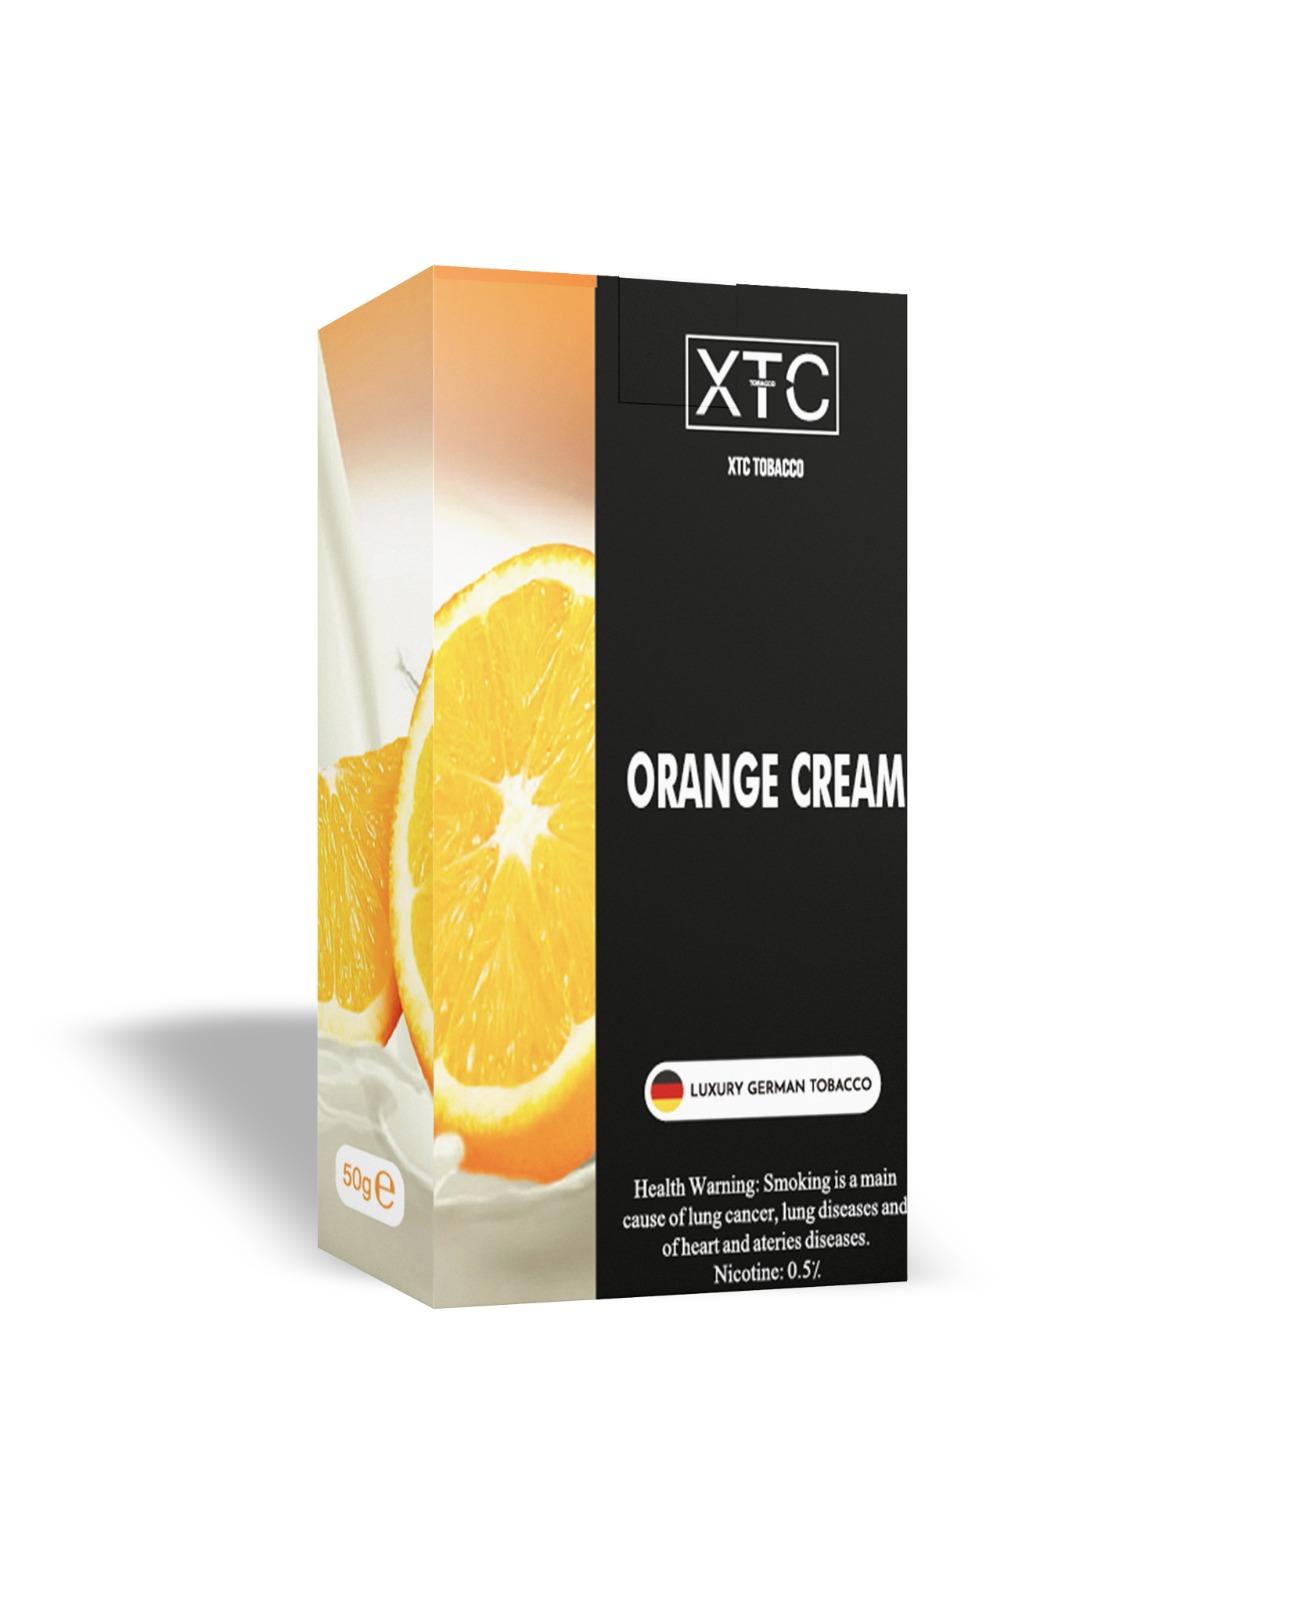 صورة لمنتج XTC Tobacco كريمة البرتقال